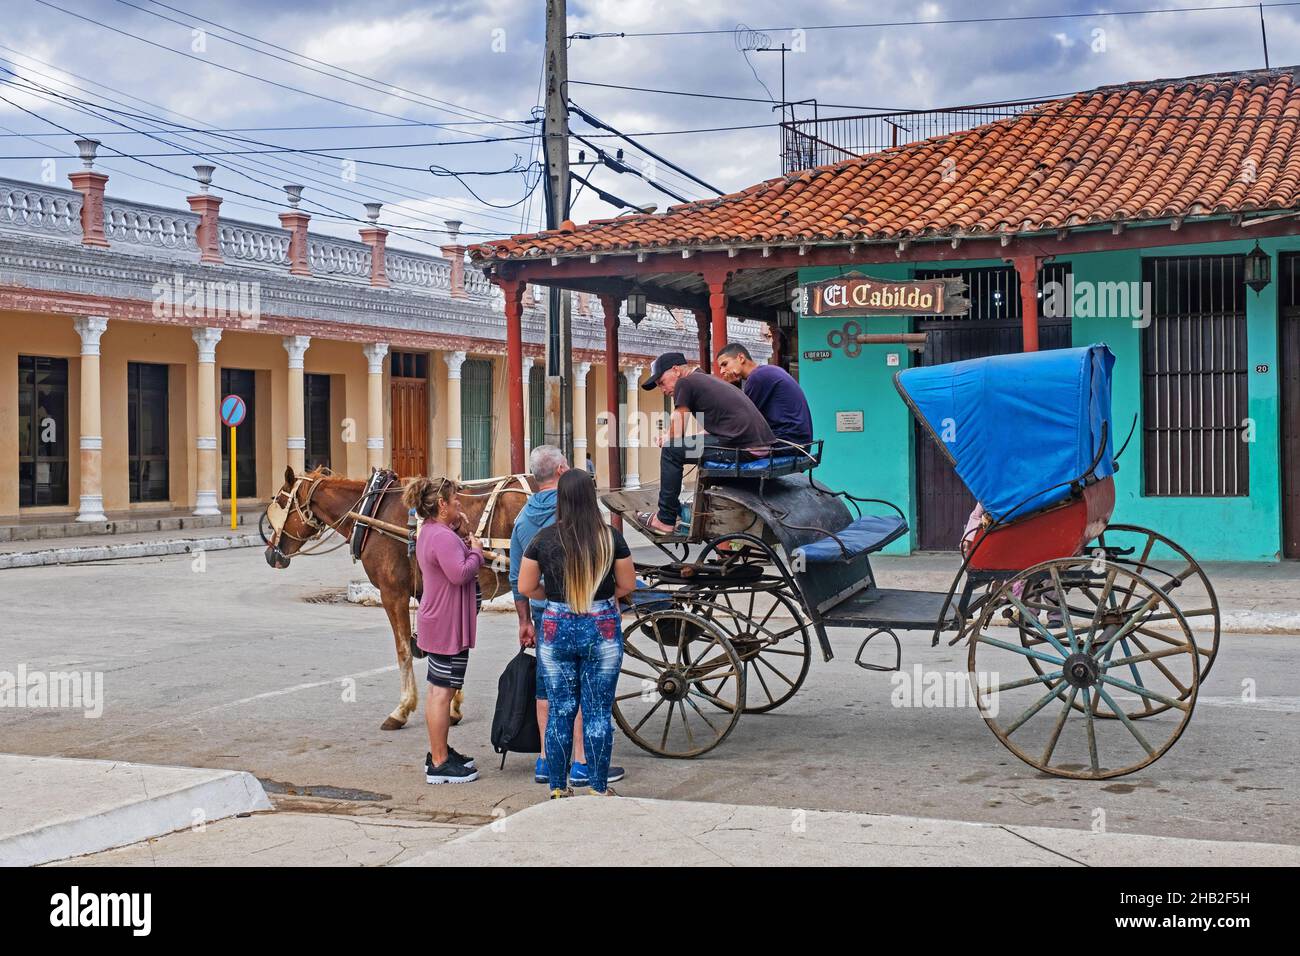 Touristes et calèche en face du restaurant El Cabildo dans la ville Ciego de Ávila sur l'île de Cuba, Caraïbes Banque D'Images